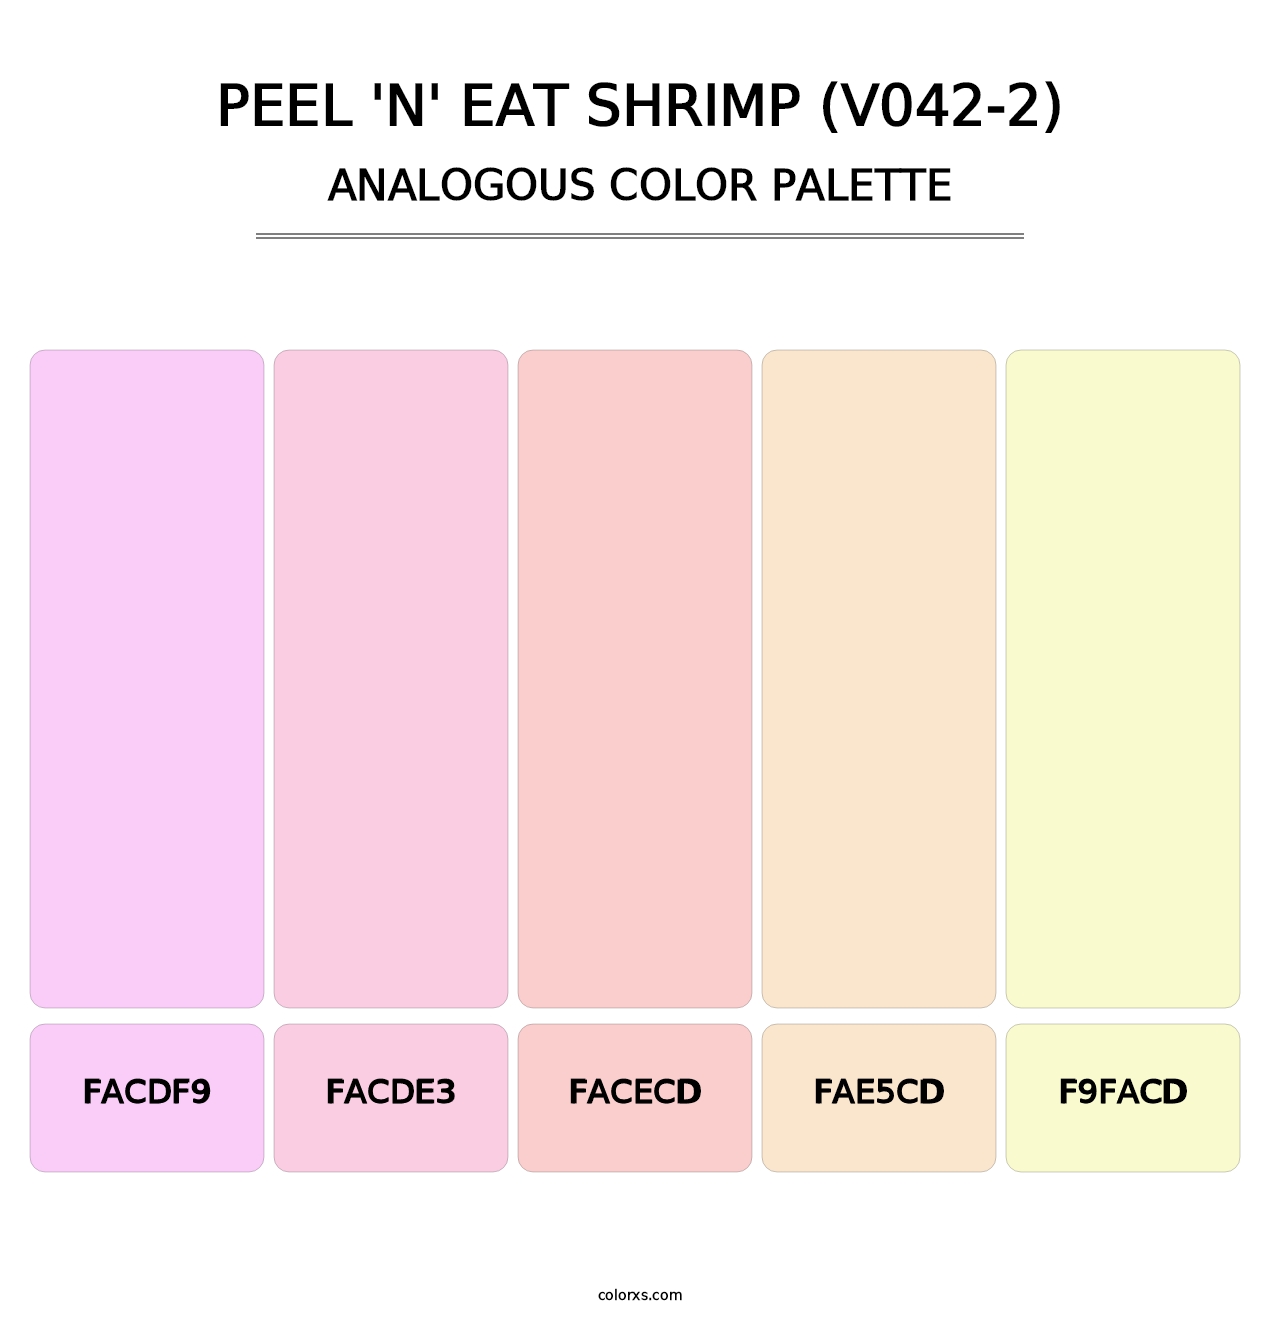 Peel 'n' Eat Shrimp (V042-2) - Analogous Color Palette